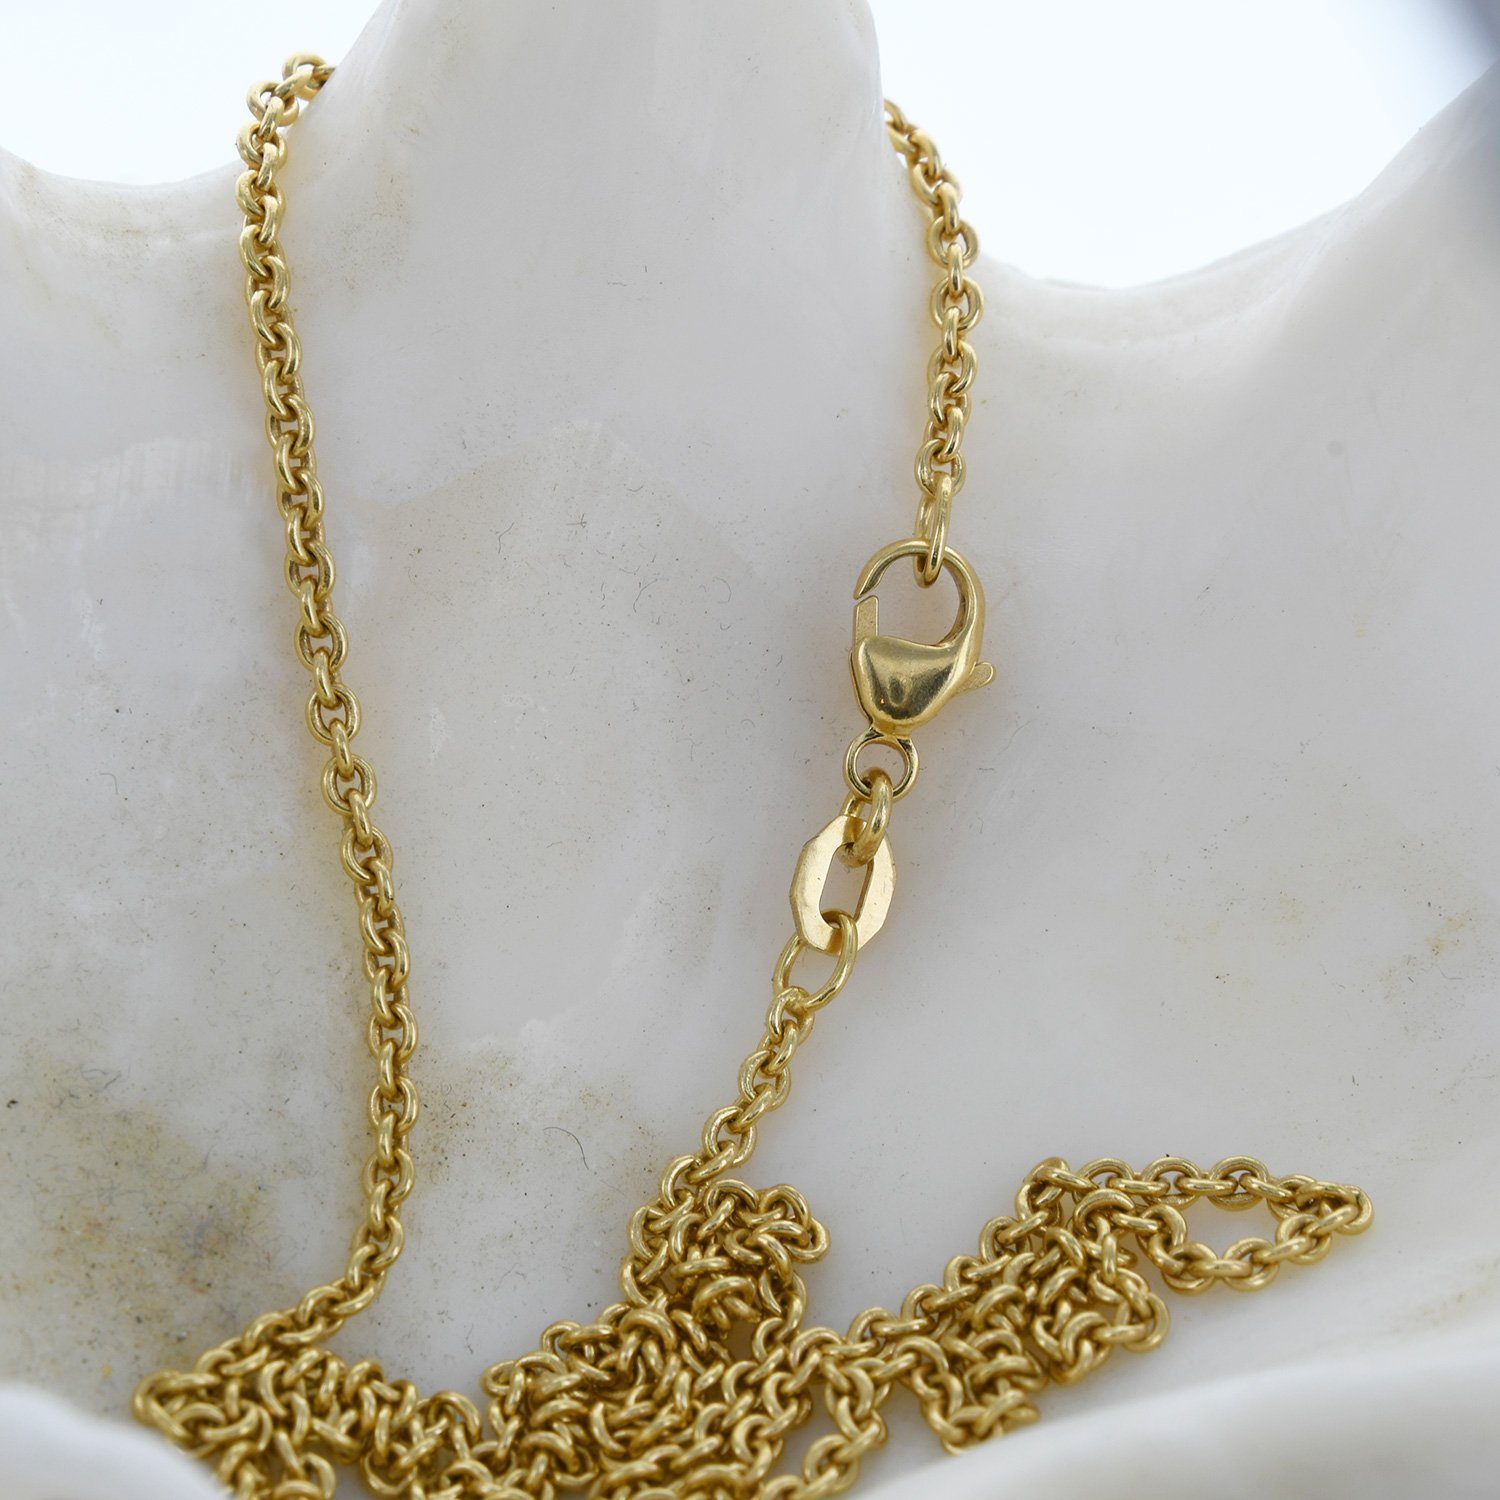 HOPLO Goldkette »2,0 mm 750 - 18 Karat Gold Halskette Ankerkette rund  massiv Gold hochwertige Goldkette - Länge nach Wahl« (inkl. Schmuckbox),  Made in Germany online kaufen | OTTO